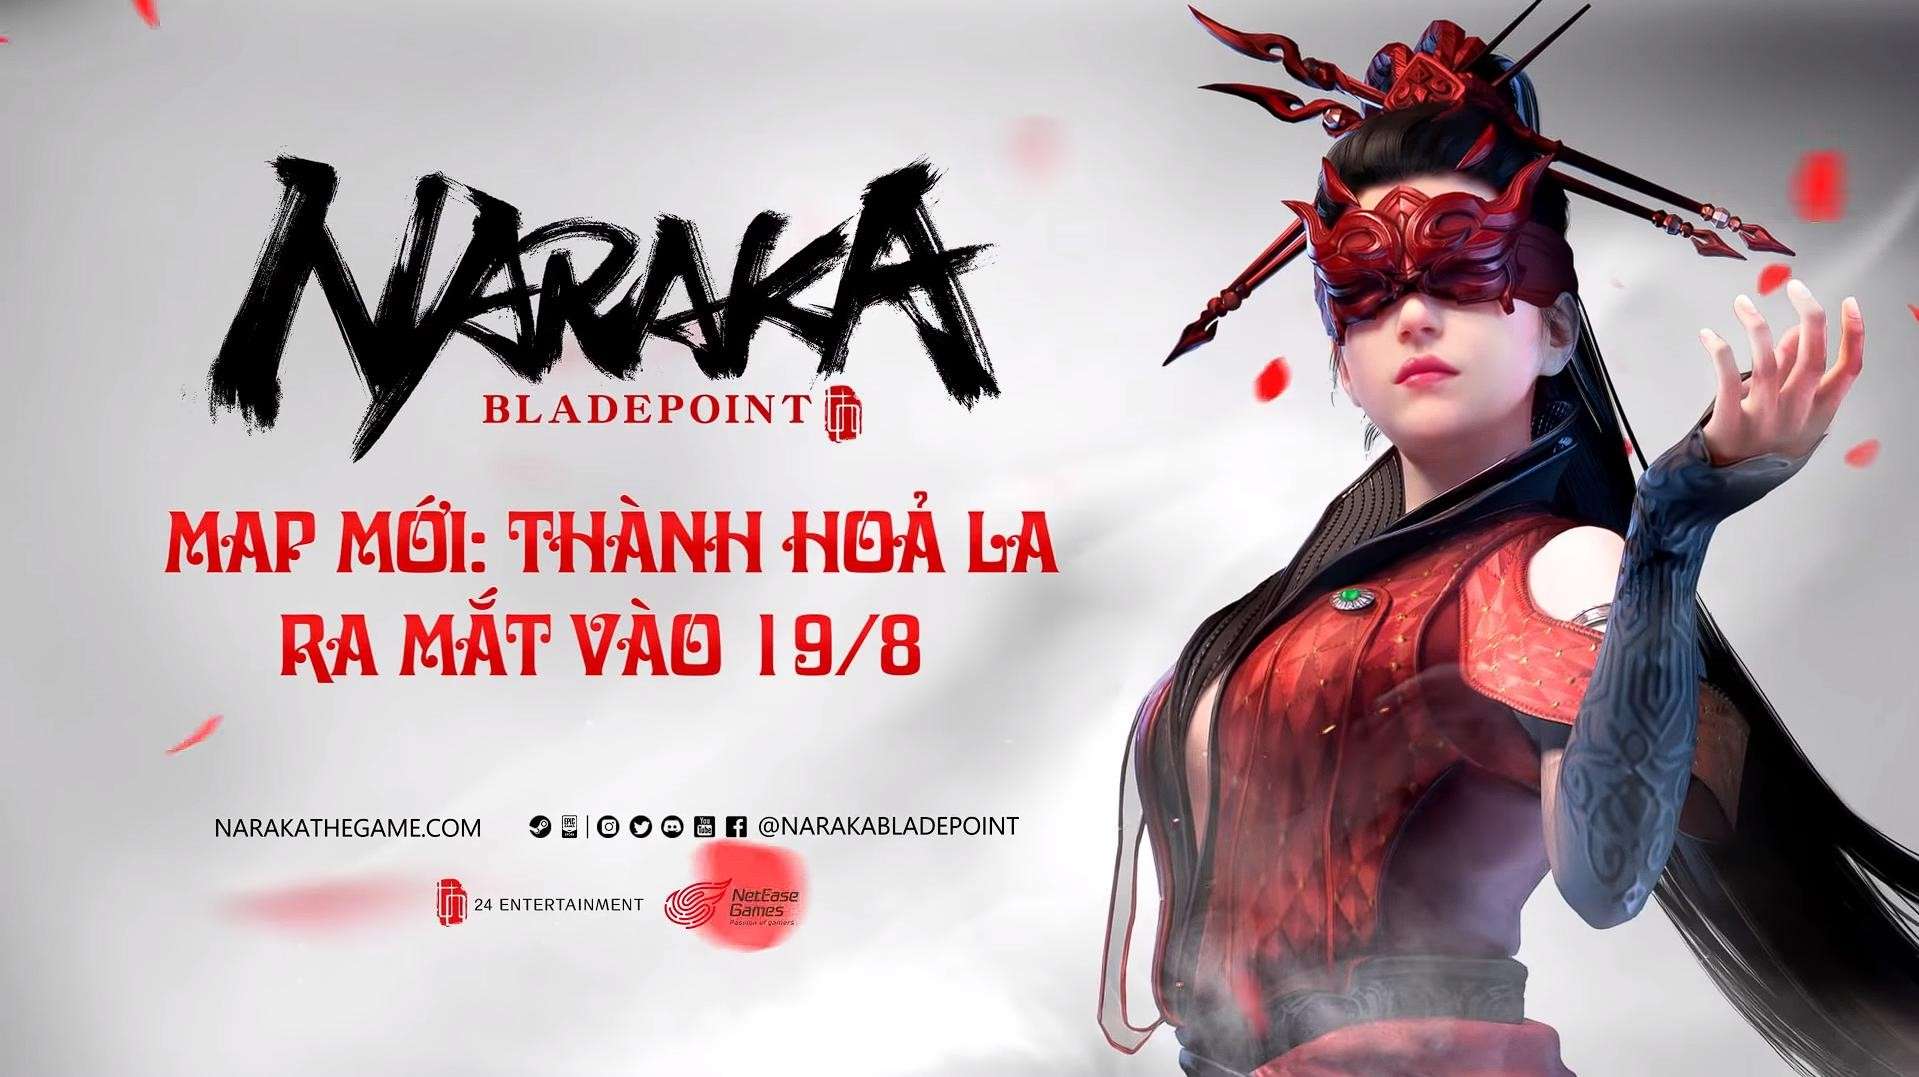 Bom tấn Naraka: Bladepoint lần đầu hợp tác cùng nghệ sĩ Việt